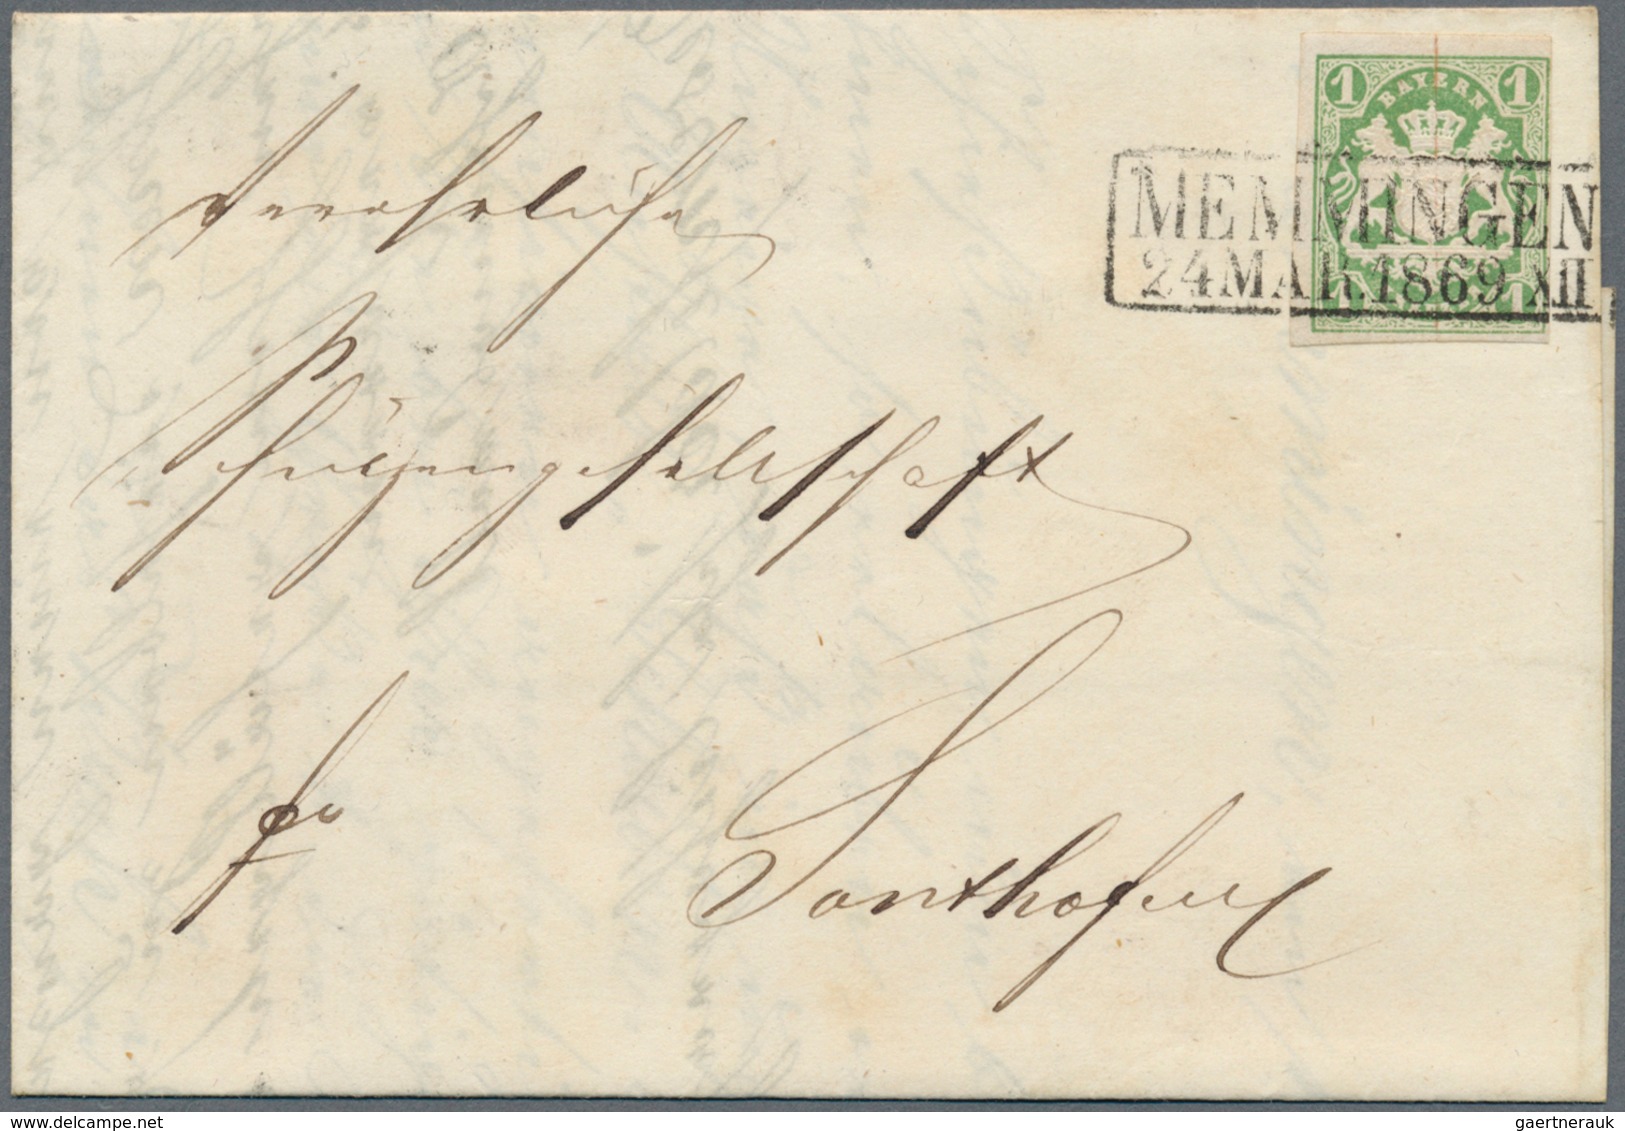 Bayern - Marken und Briefe: 1850-1870, Partie mit über 100 Briefen, Postscheinen und Belegen, zumeis